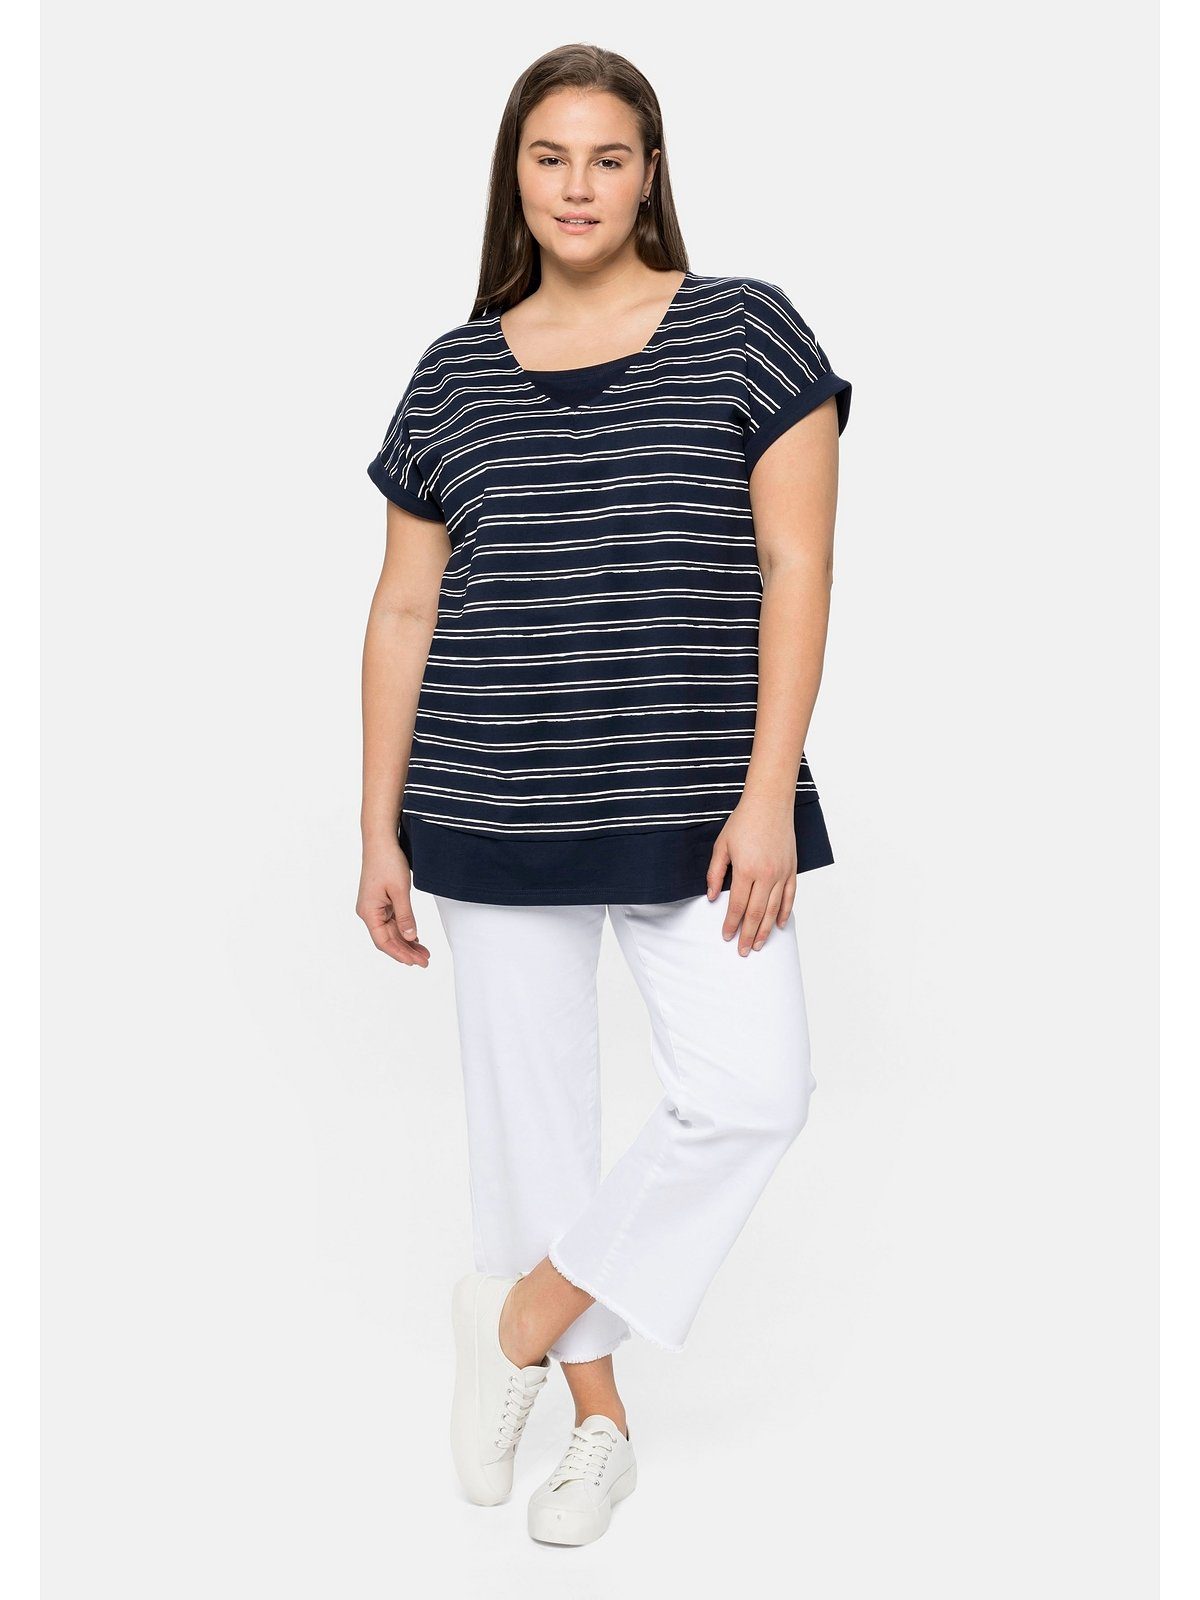 Sheego T-Shirt Große Größen Lagenlook, marine-weiß aus Baumwolle im reiner